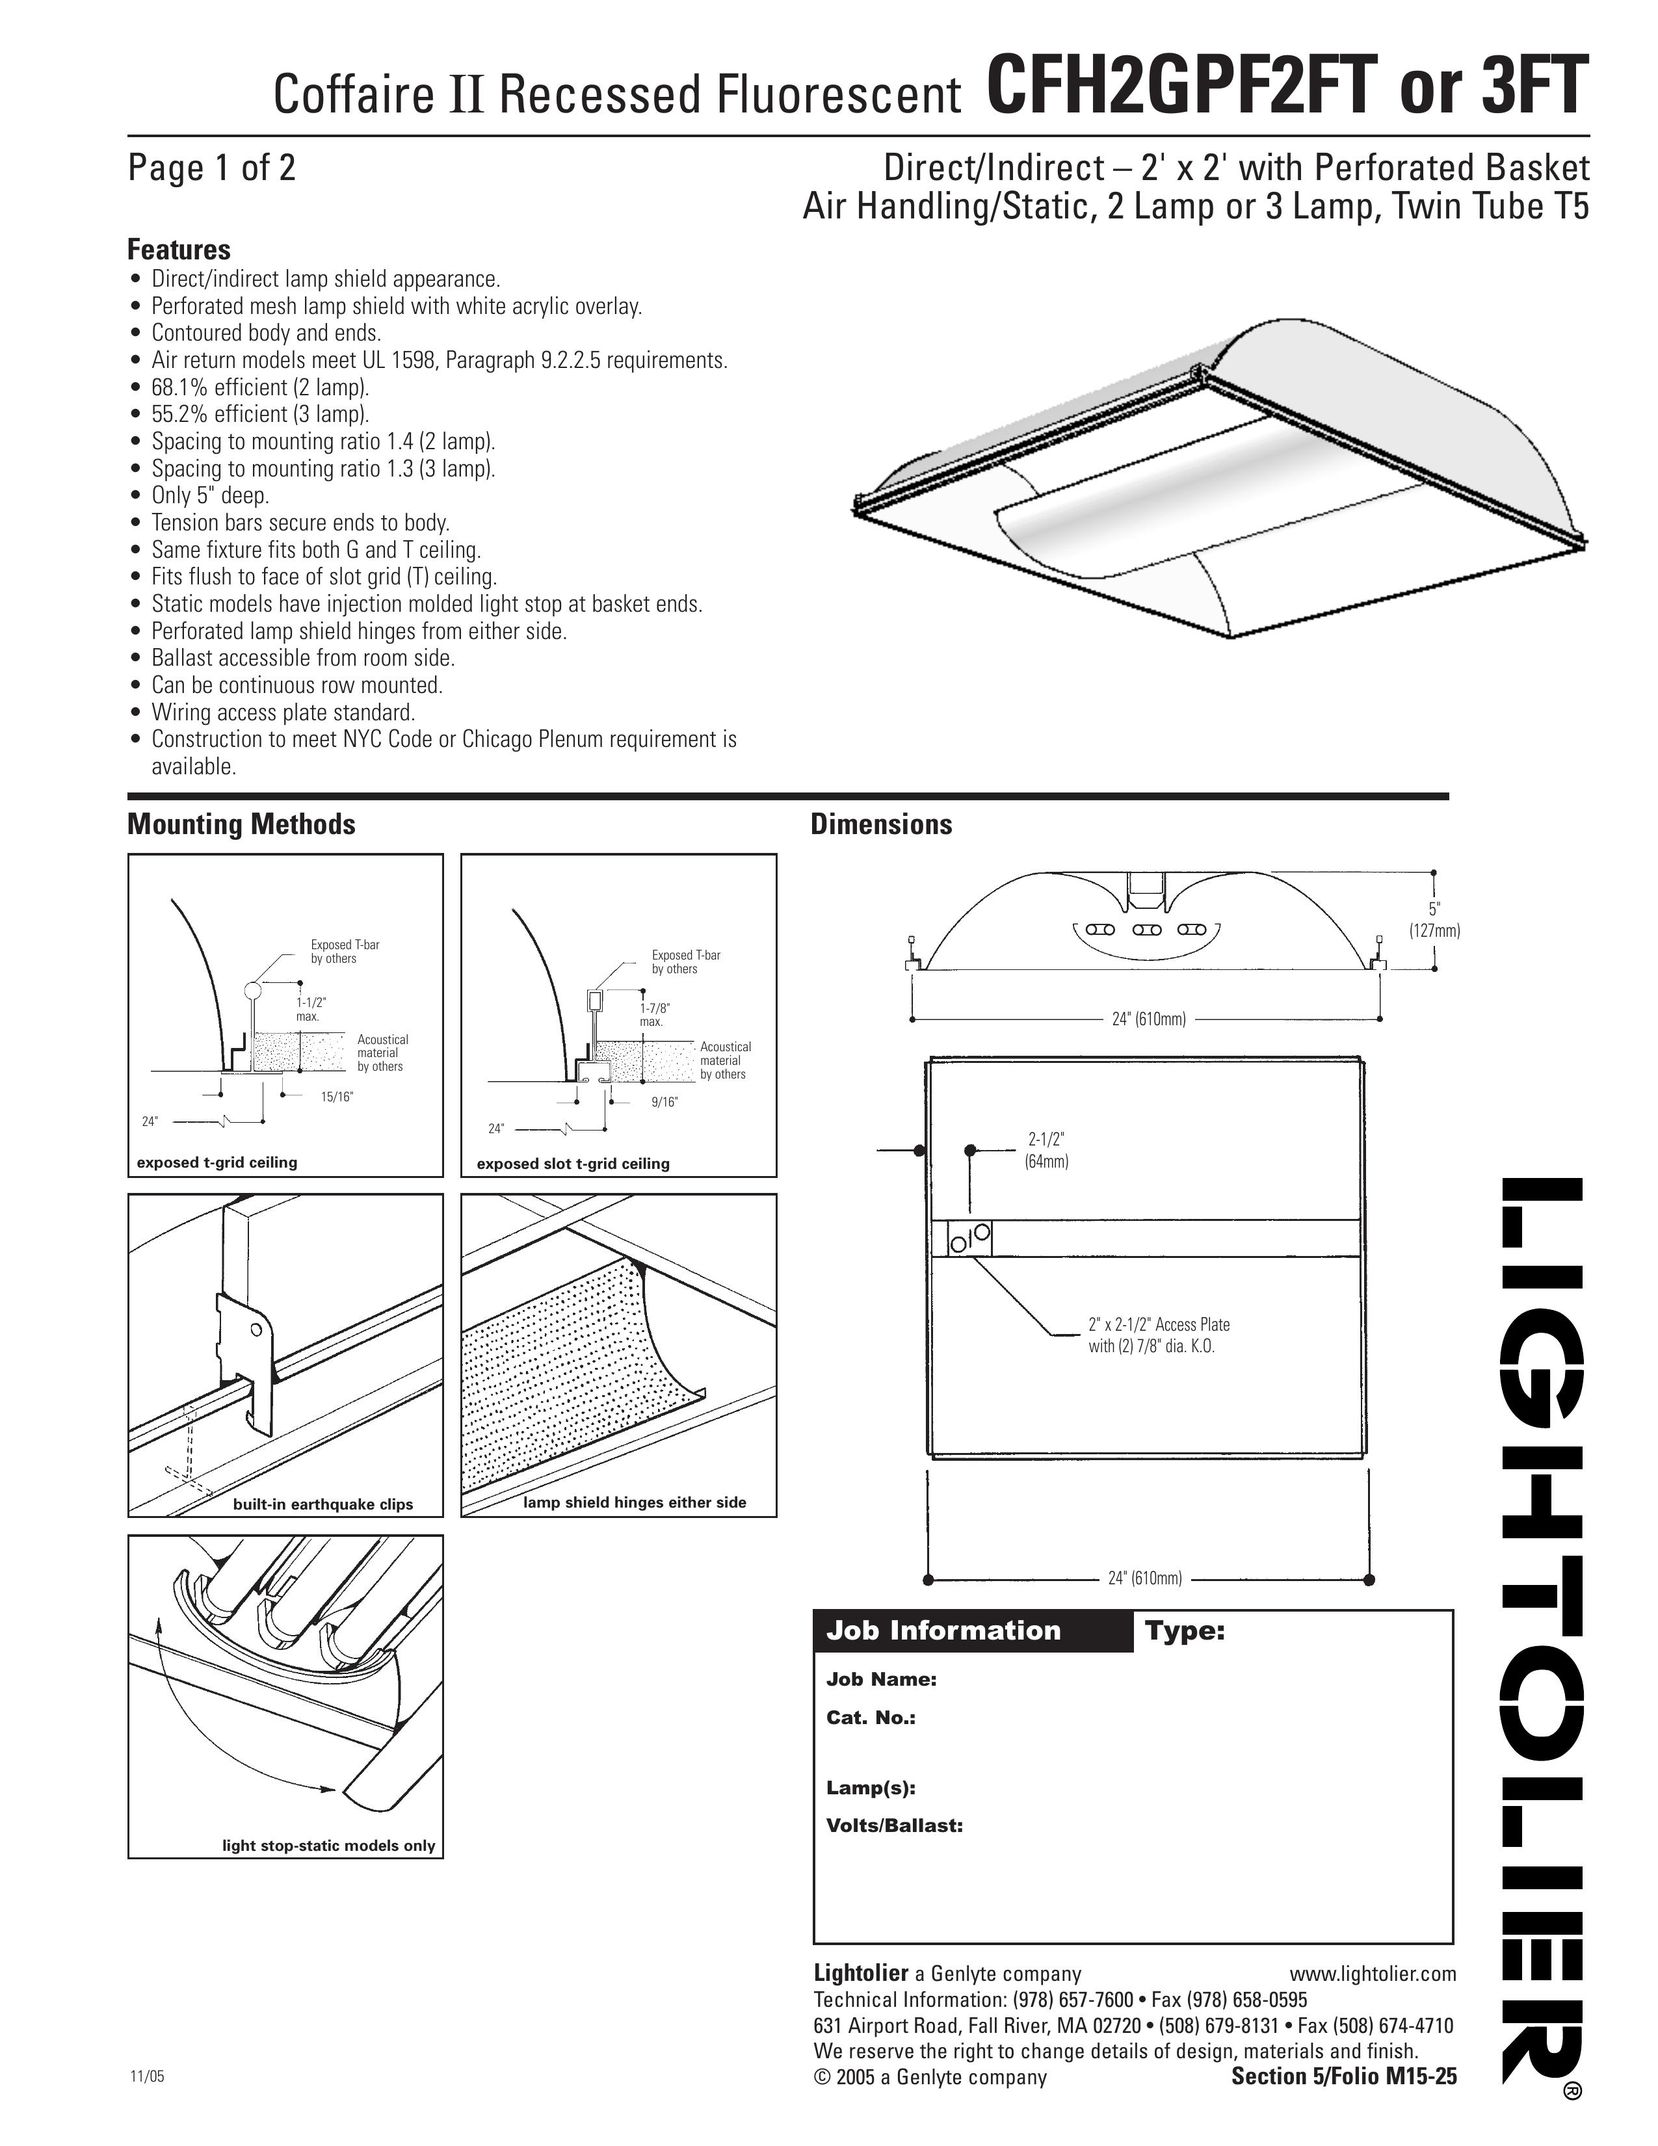 Lightolier CFH2GPF3FT Work Light User Manual